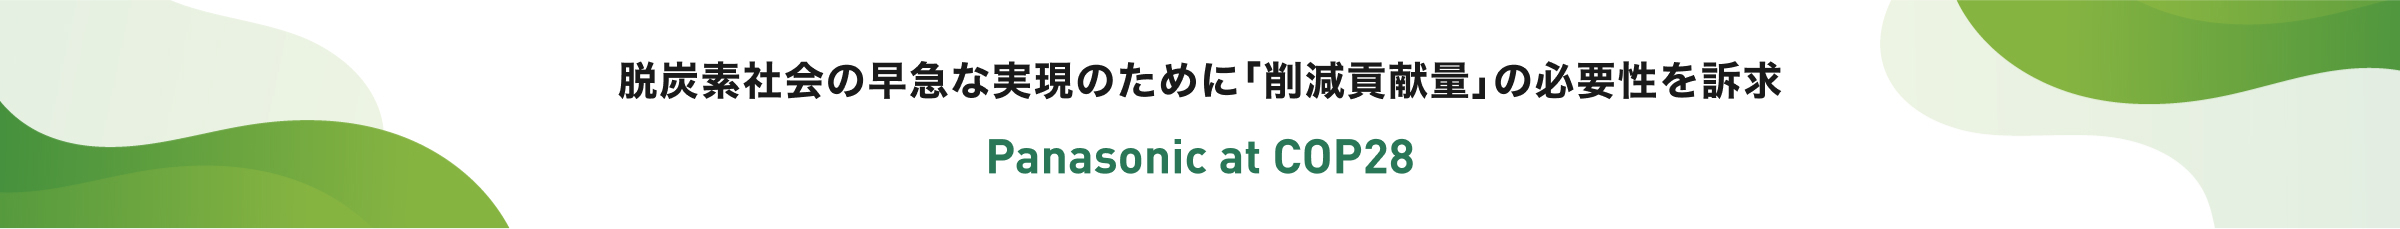 脱炭素社会の早急な実現のために「削減貢献量」の必要性を訴求 Panasonic at COP28